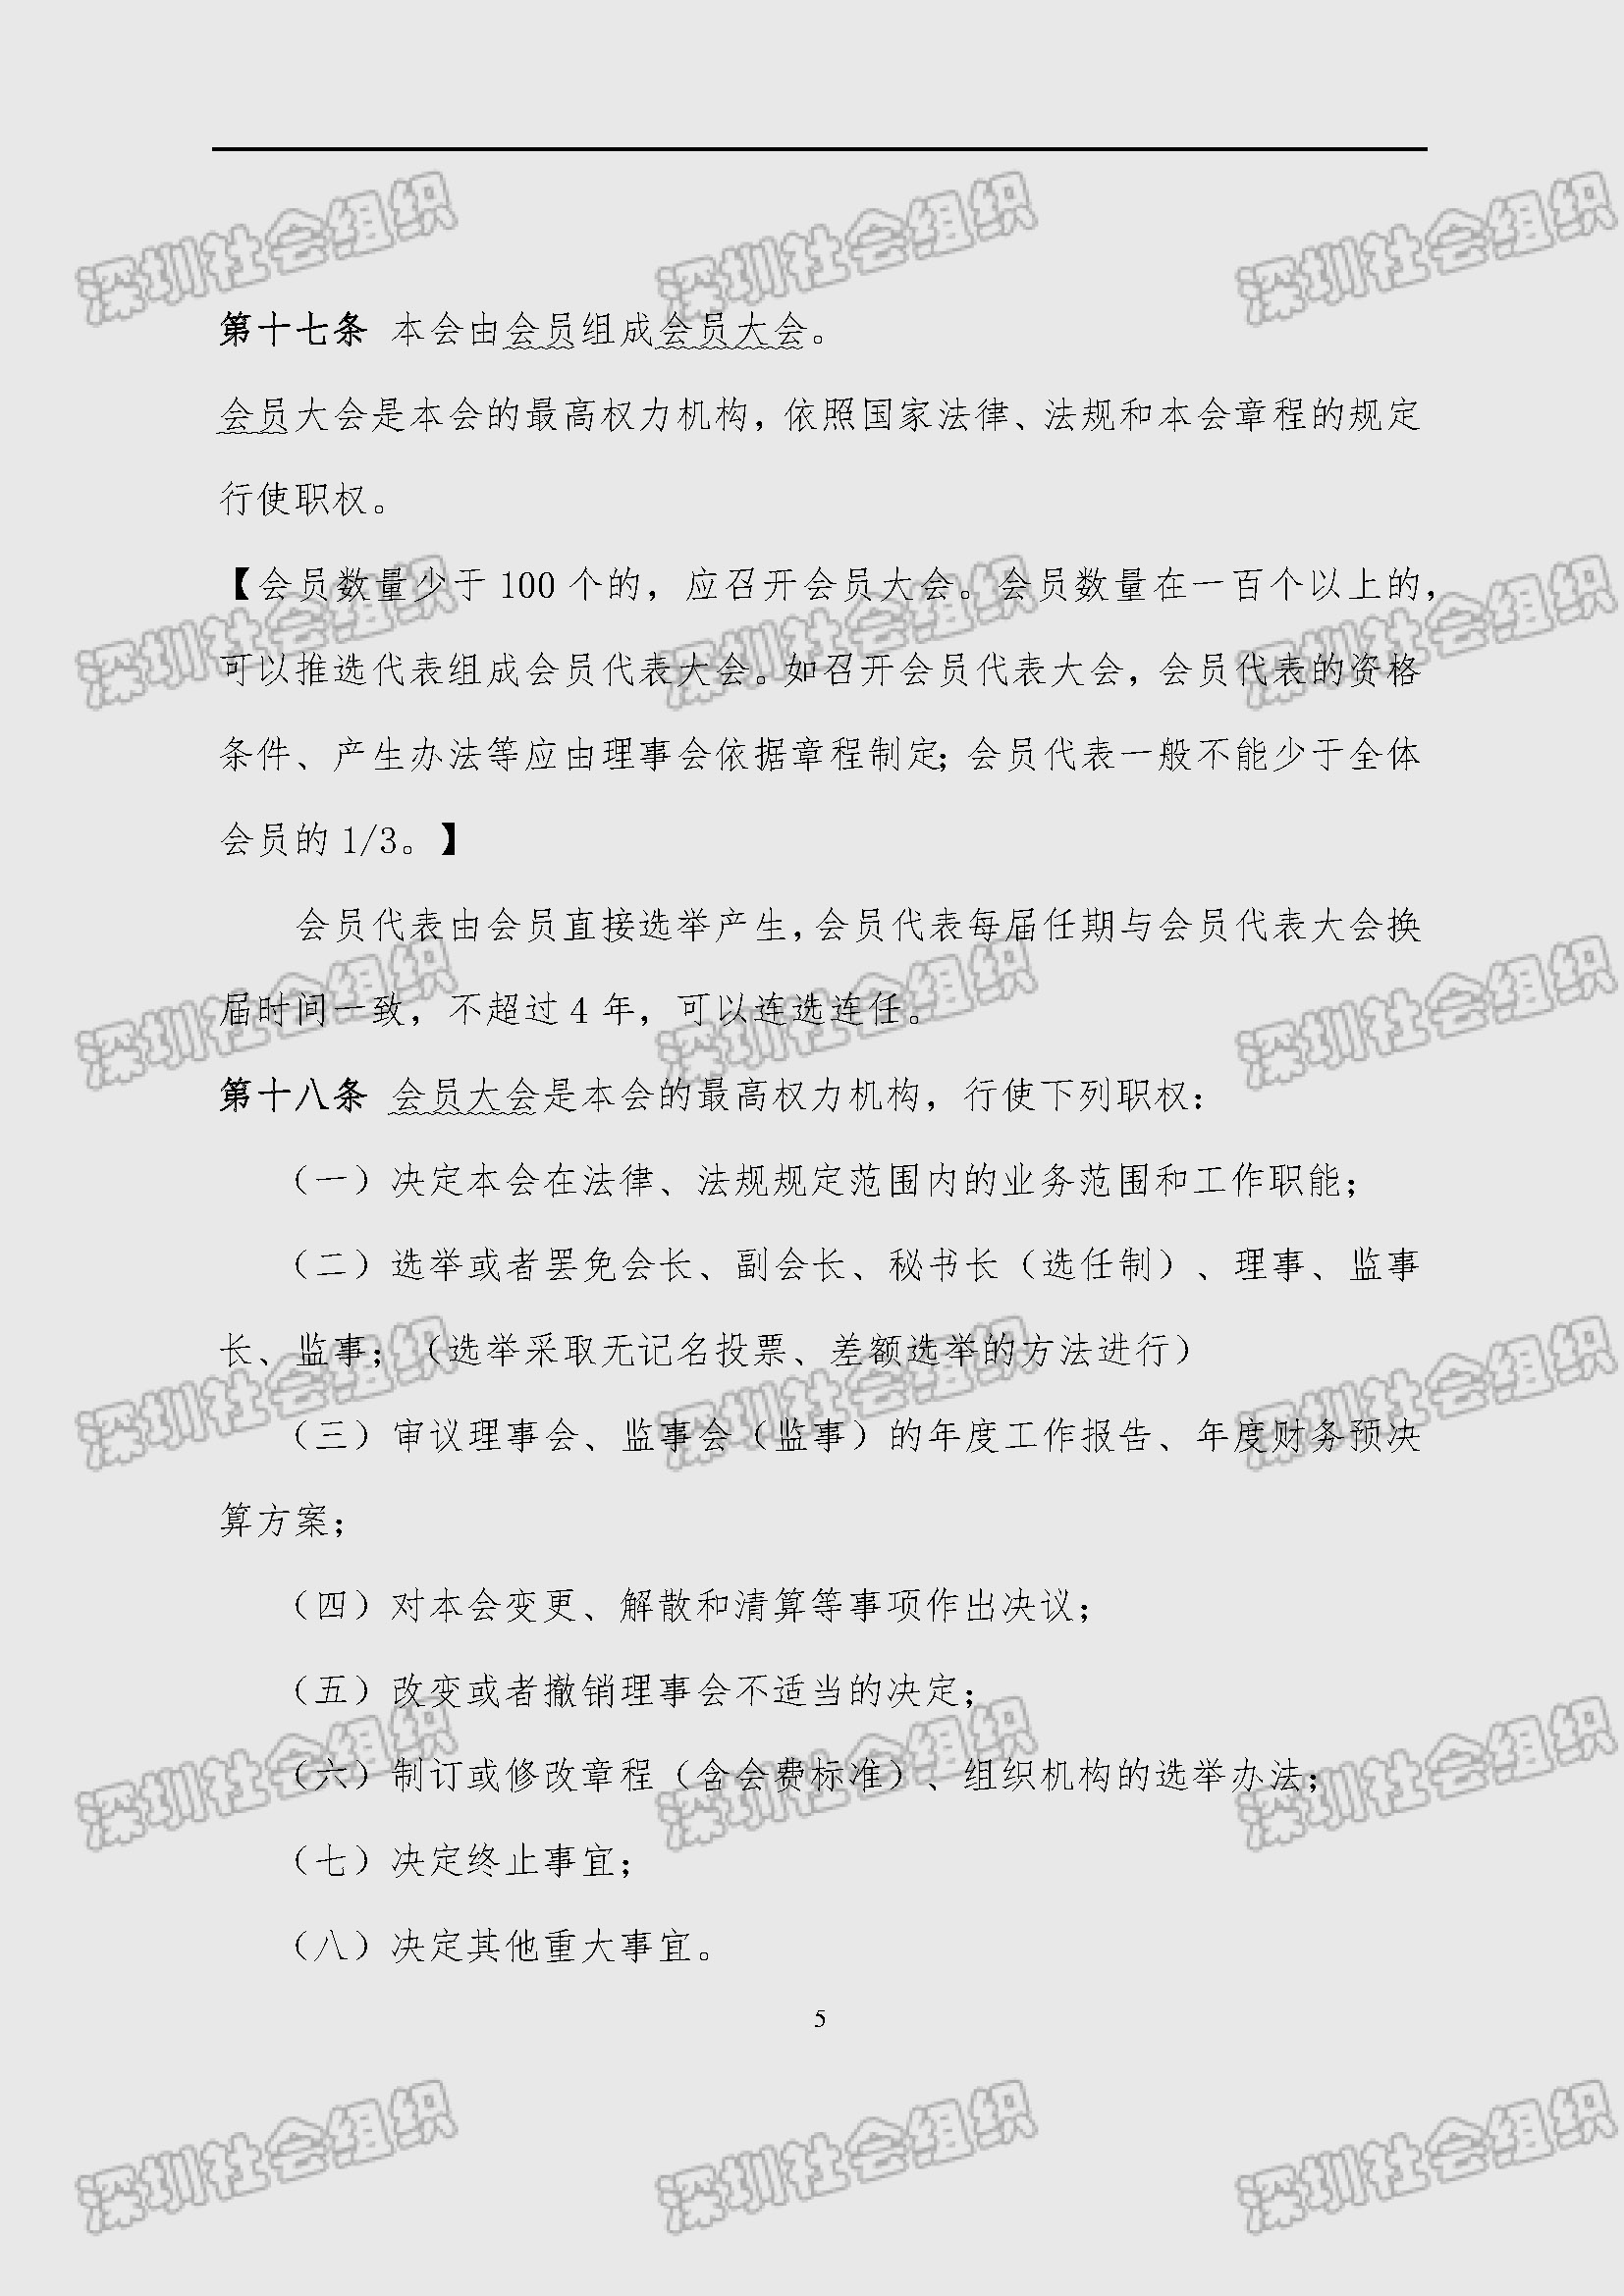 深圳市新材料行业协会章程_页面_05.jpg